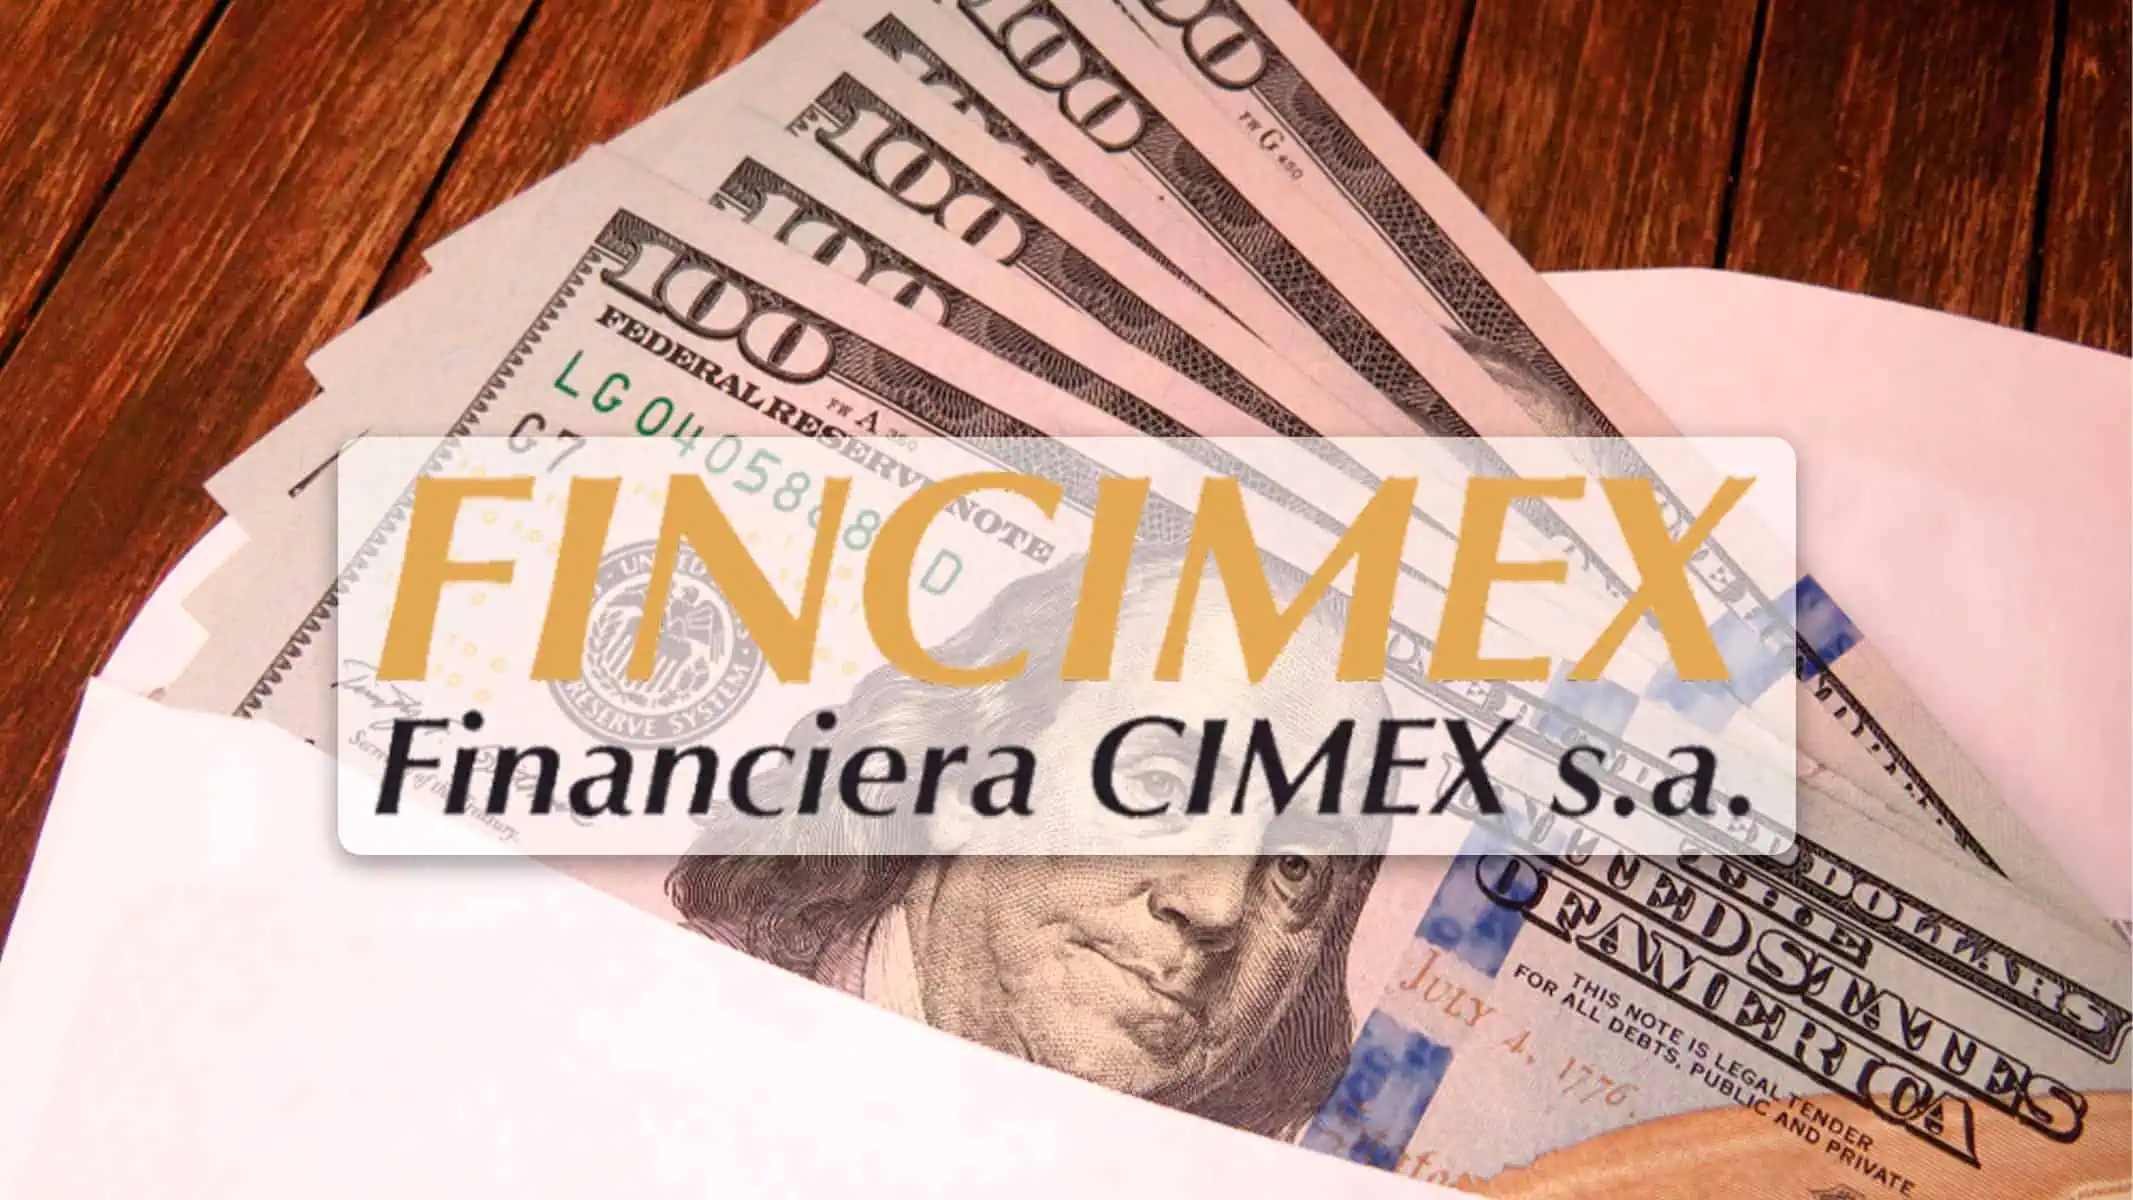 ¿Cómo Enviar Dinero a Cuba Ahora? Fincimex Revela Nuevas Vías Tras Importante Cambio